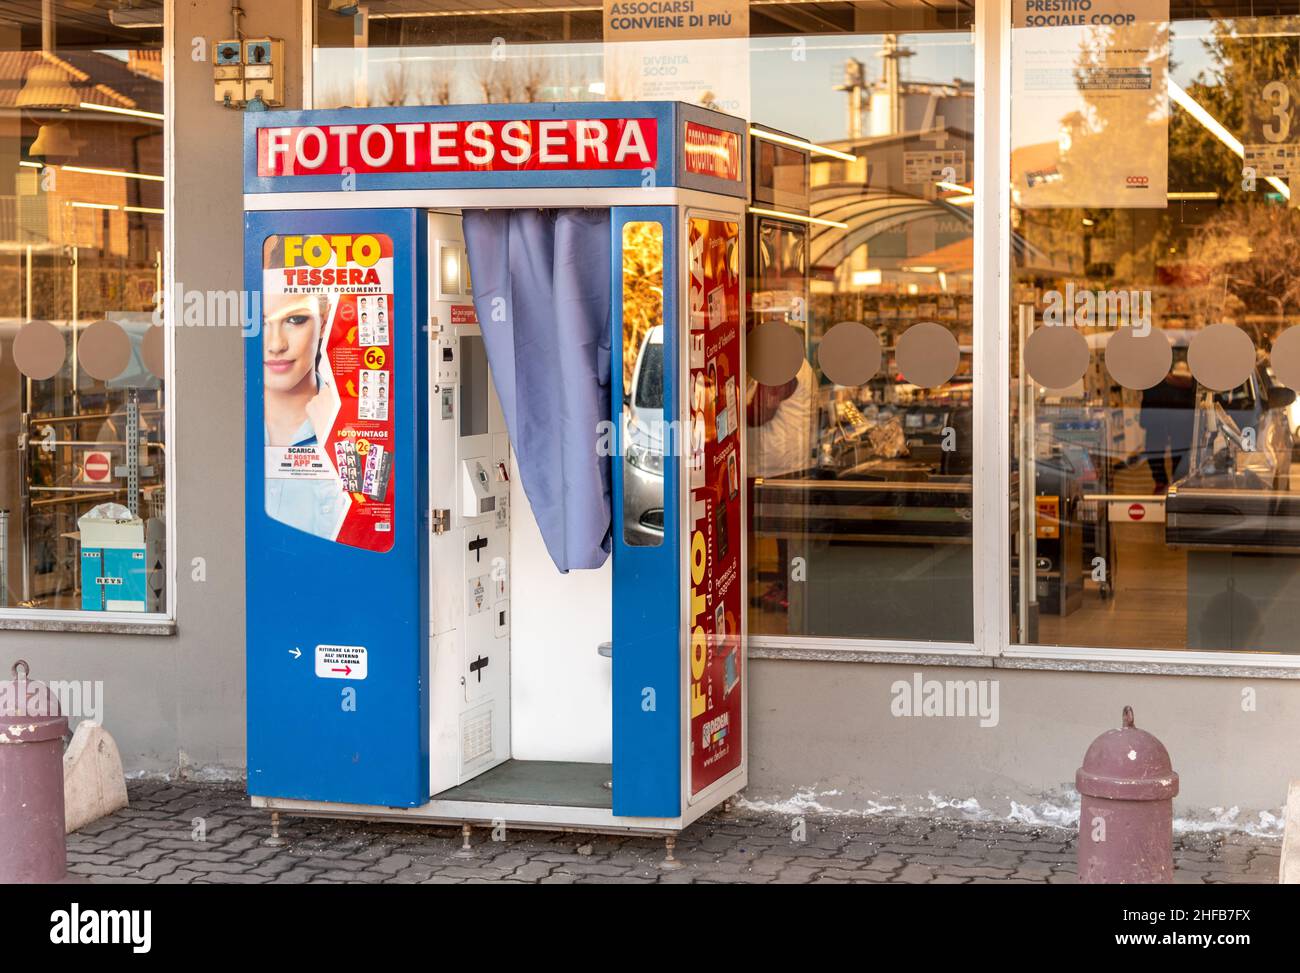 Savigliano, Cuneo, Italien - 14. Januar 2022: Fotokabine für die Erstellung von Passfotos, automatische italienische Fotokabine im Conad Supermarkt Stockfoto